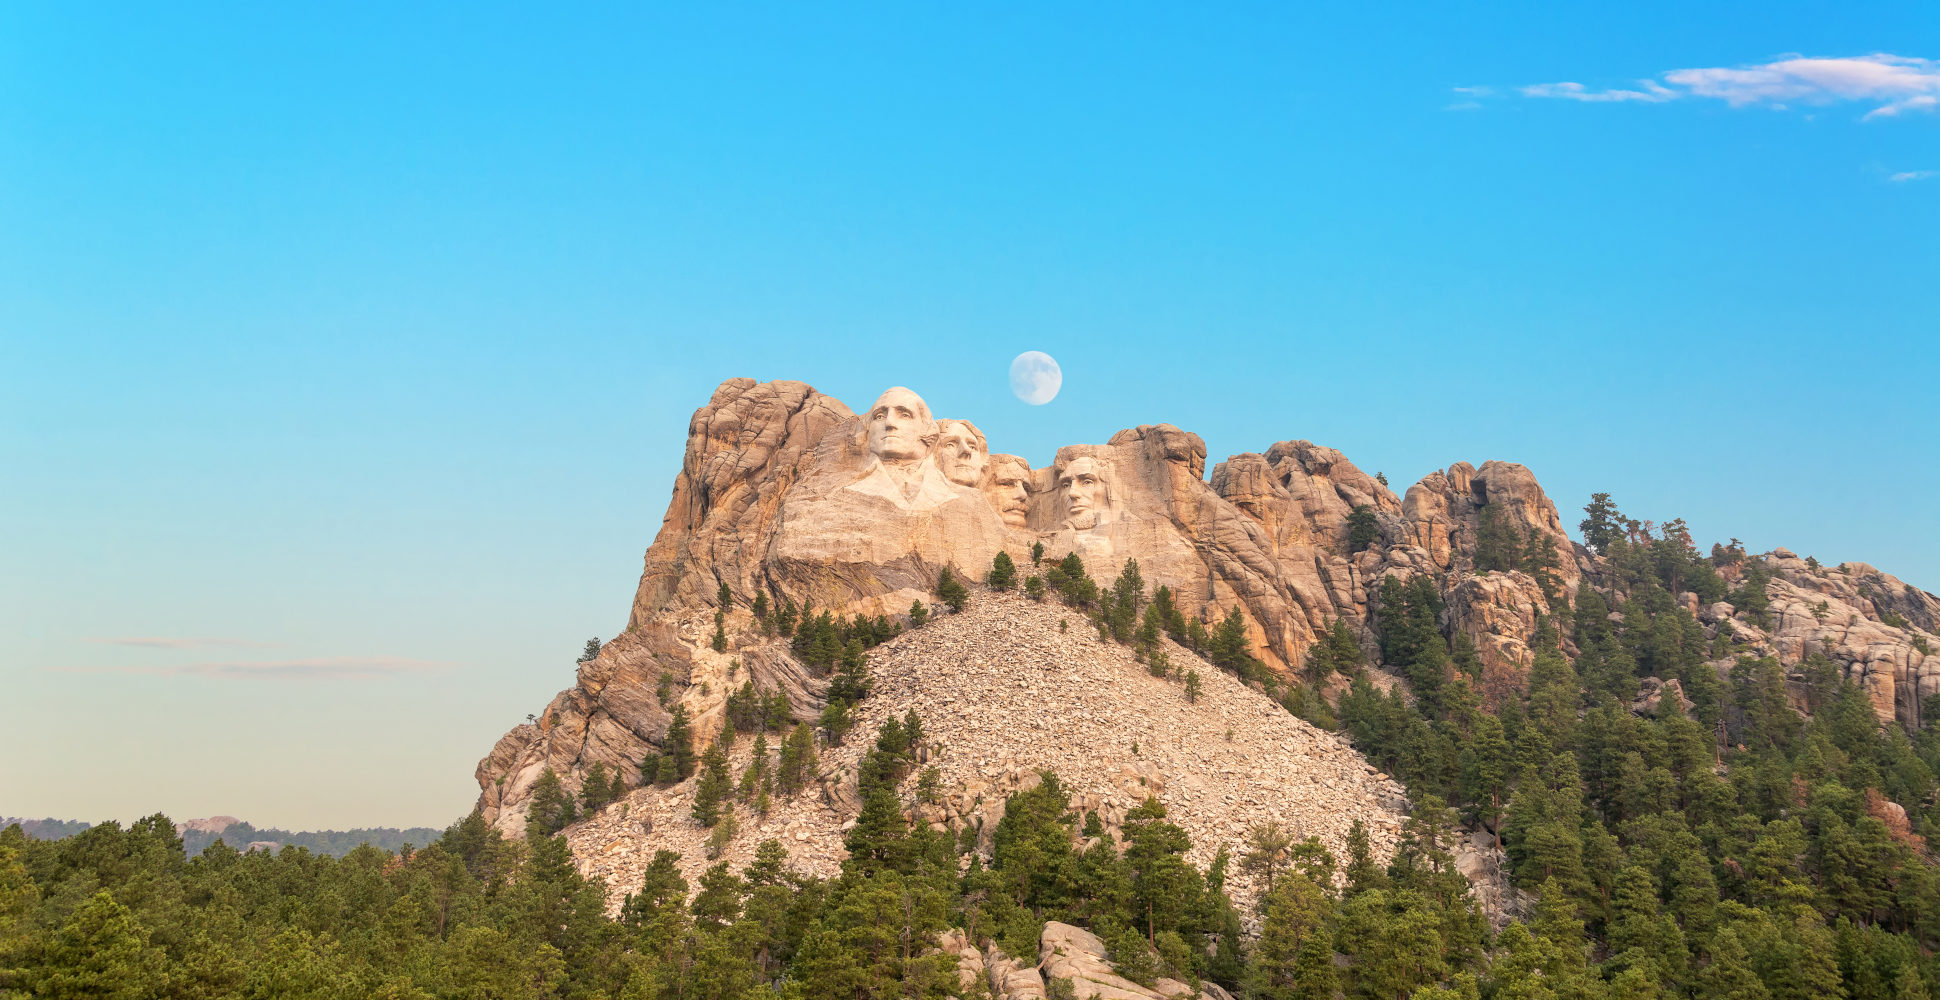 Moon Rising over Mount Rushmore National Memorial